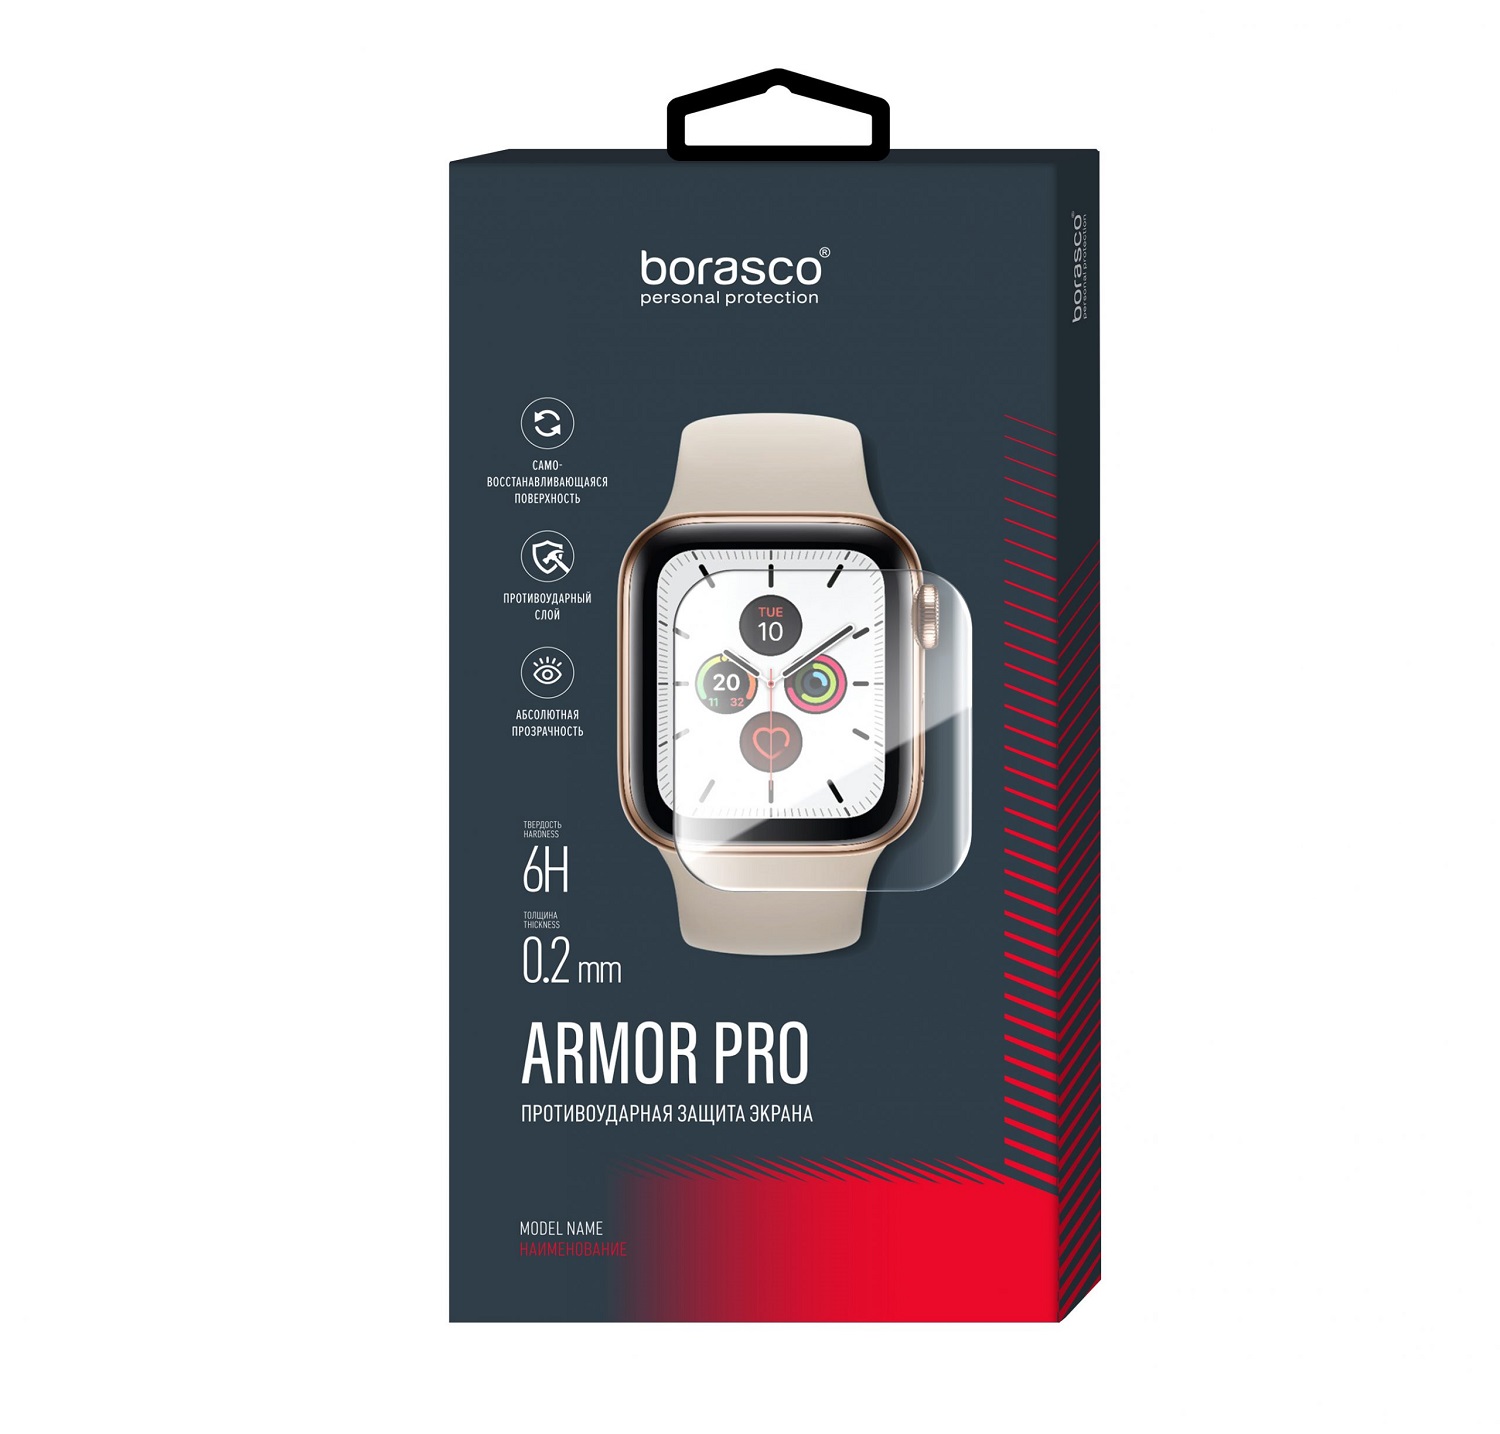 Защита экрана BoraSCO Armor Pro для Xiaomi Mi band 3 защита экрана borasco armor pro для honor band 4 5